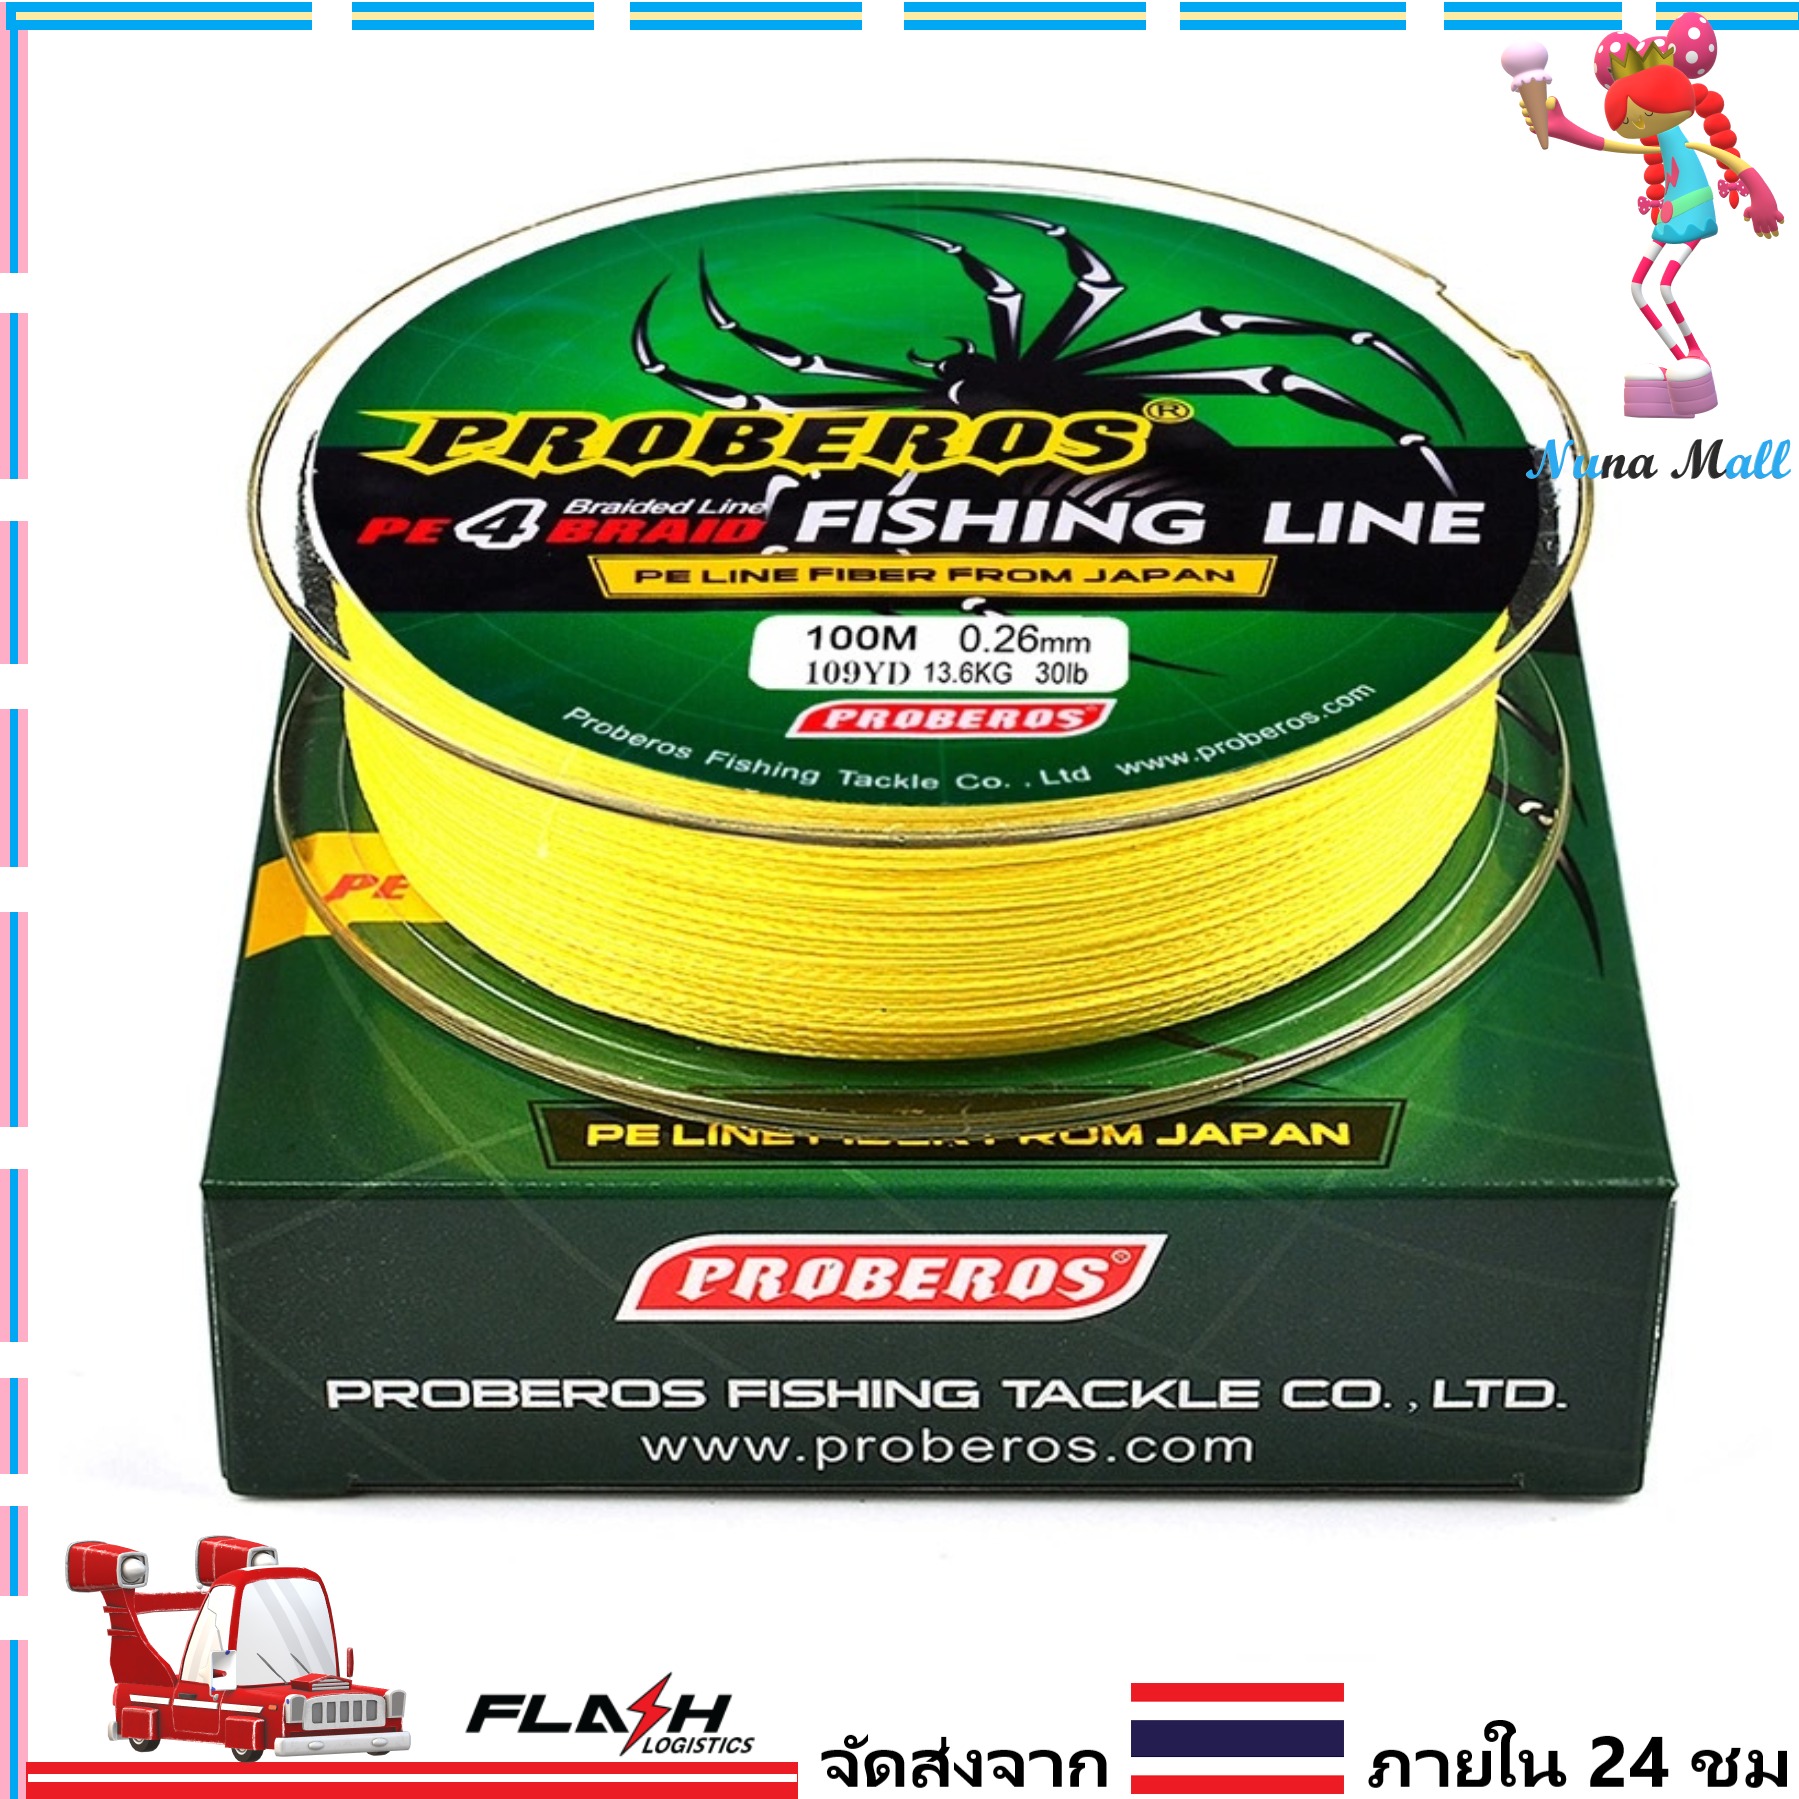 1-2 วัน (ส่งไว ราคาส่ง) สาย PE ถัก 4 สีเทา เหนียว ทน ยาว 100 เมตร - ศูนย์การค้านูนามอลล์ [ Nuna Mall ] Fishing line wire Proberos Pro Beros - yellow